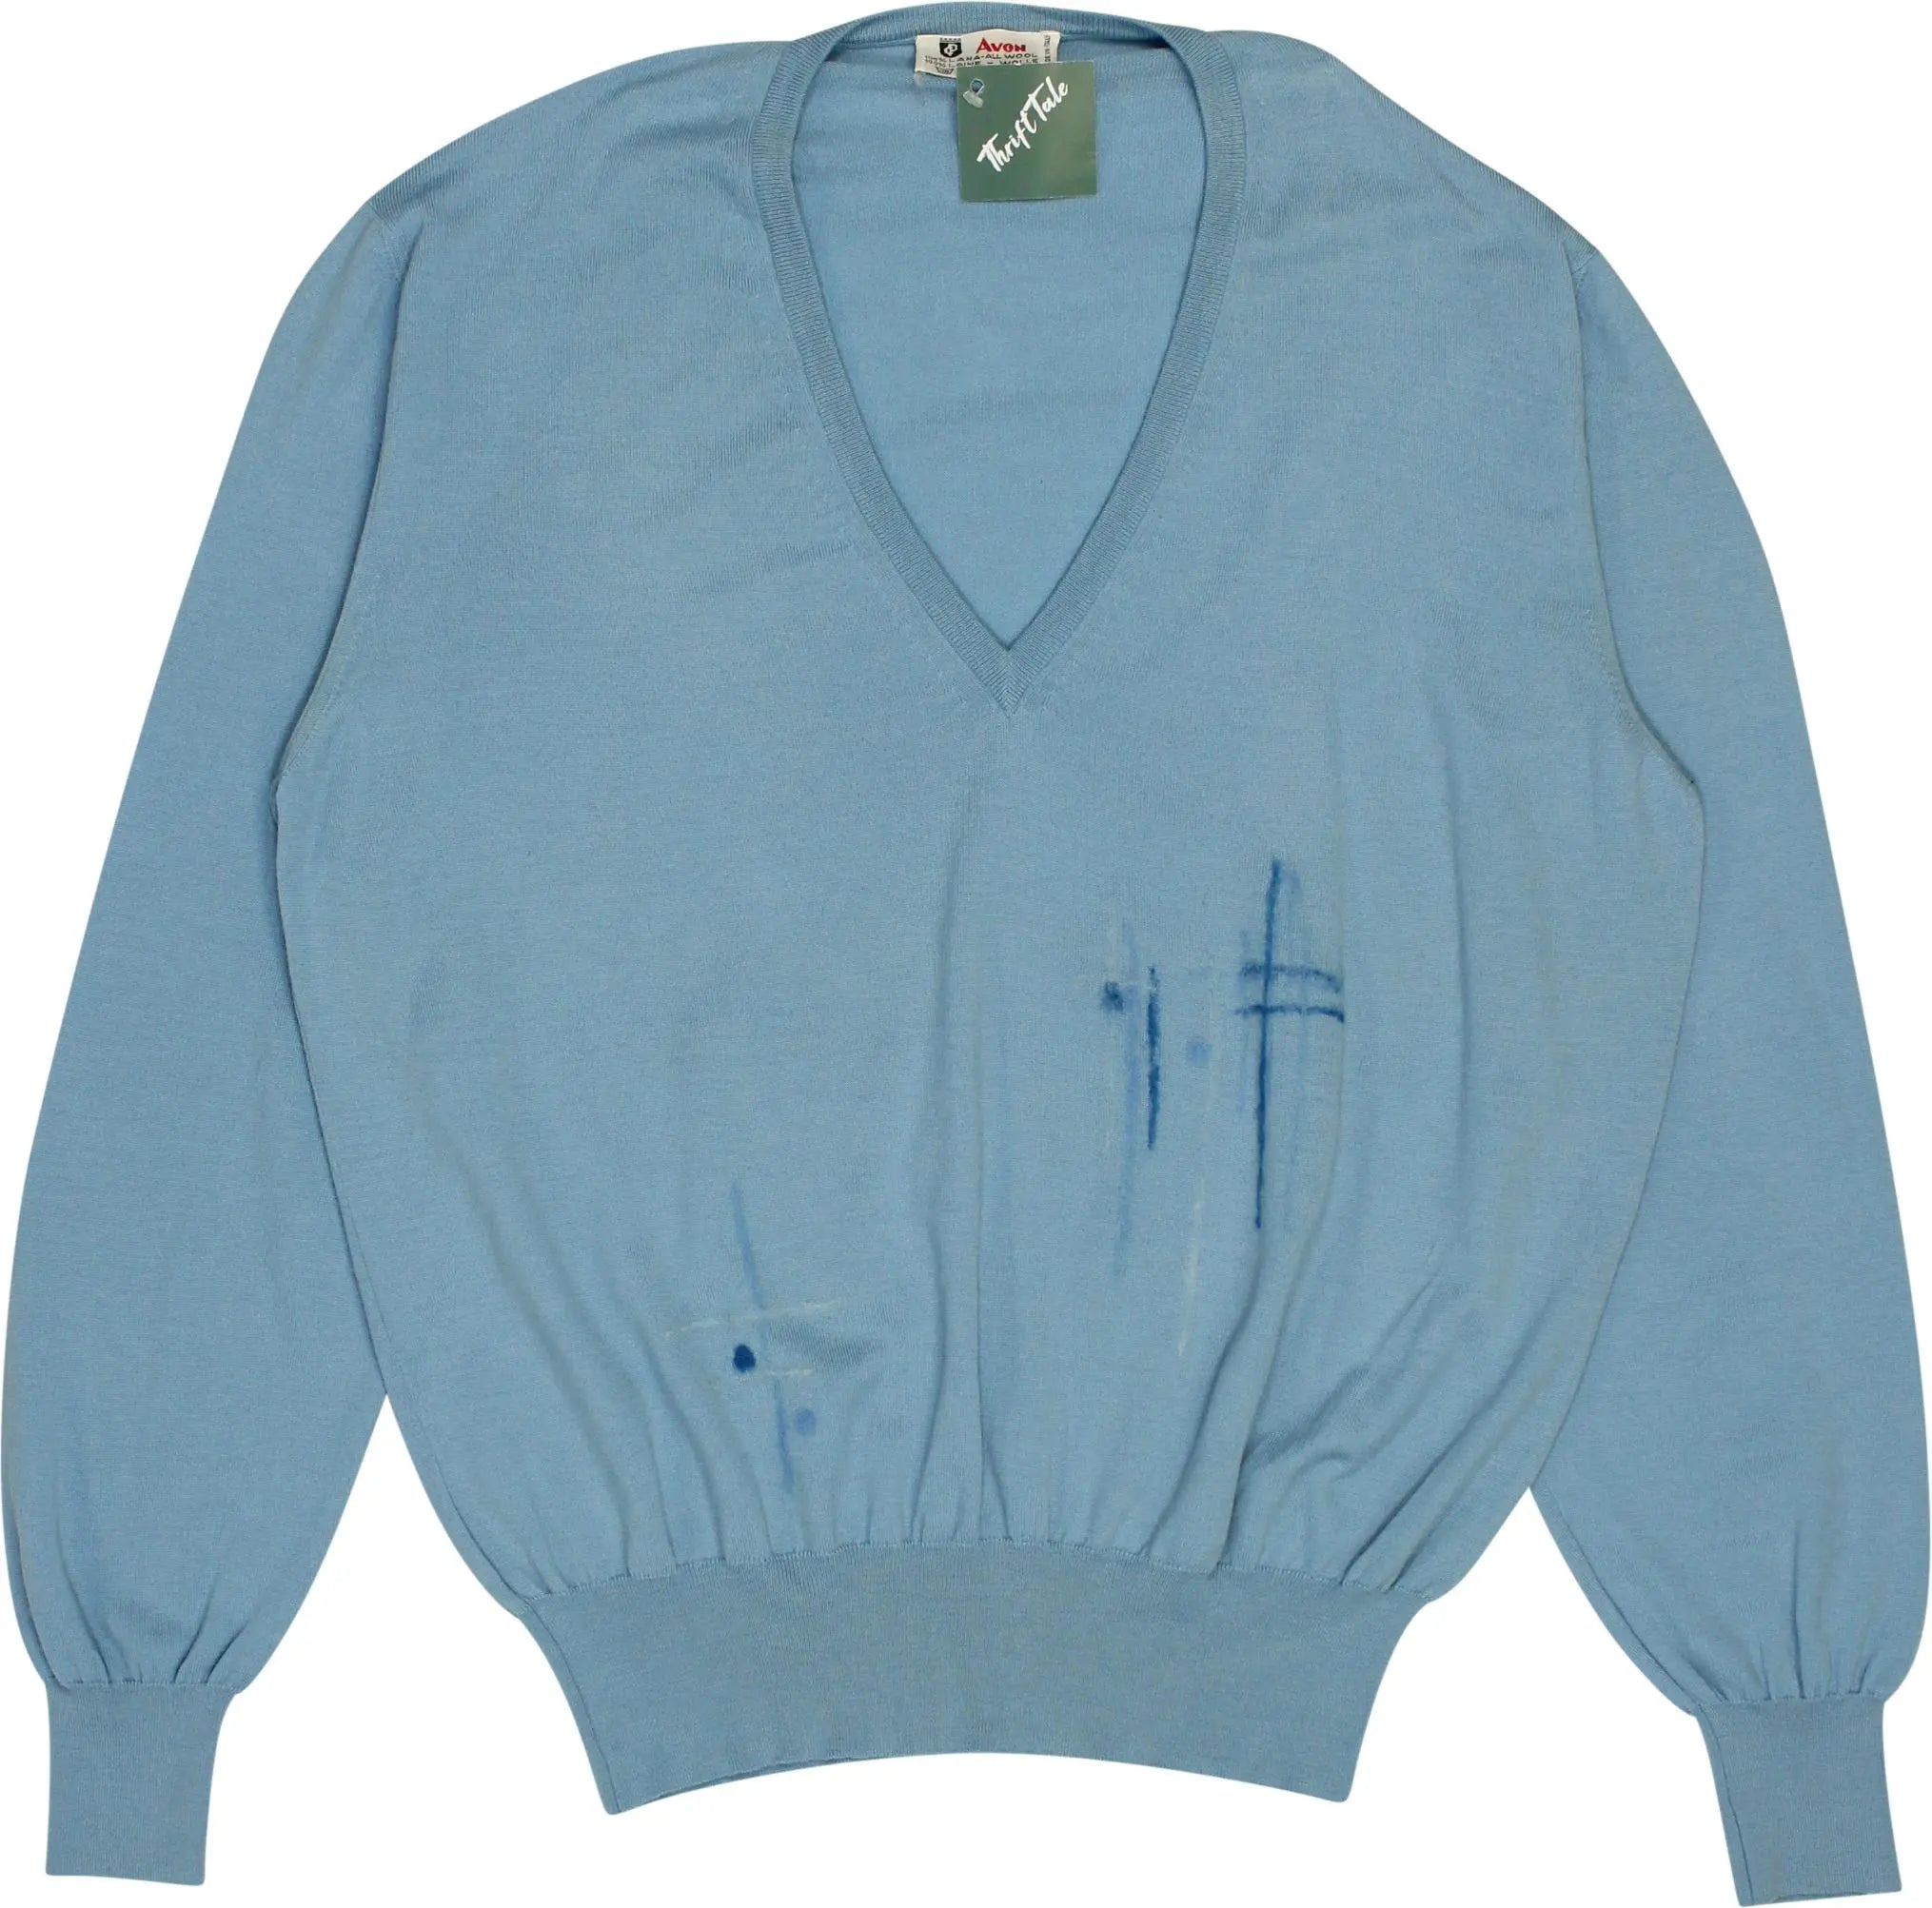 Avon - Blue V-neck Jumper- ThriftTale.com - Vintage and second handclothing